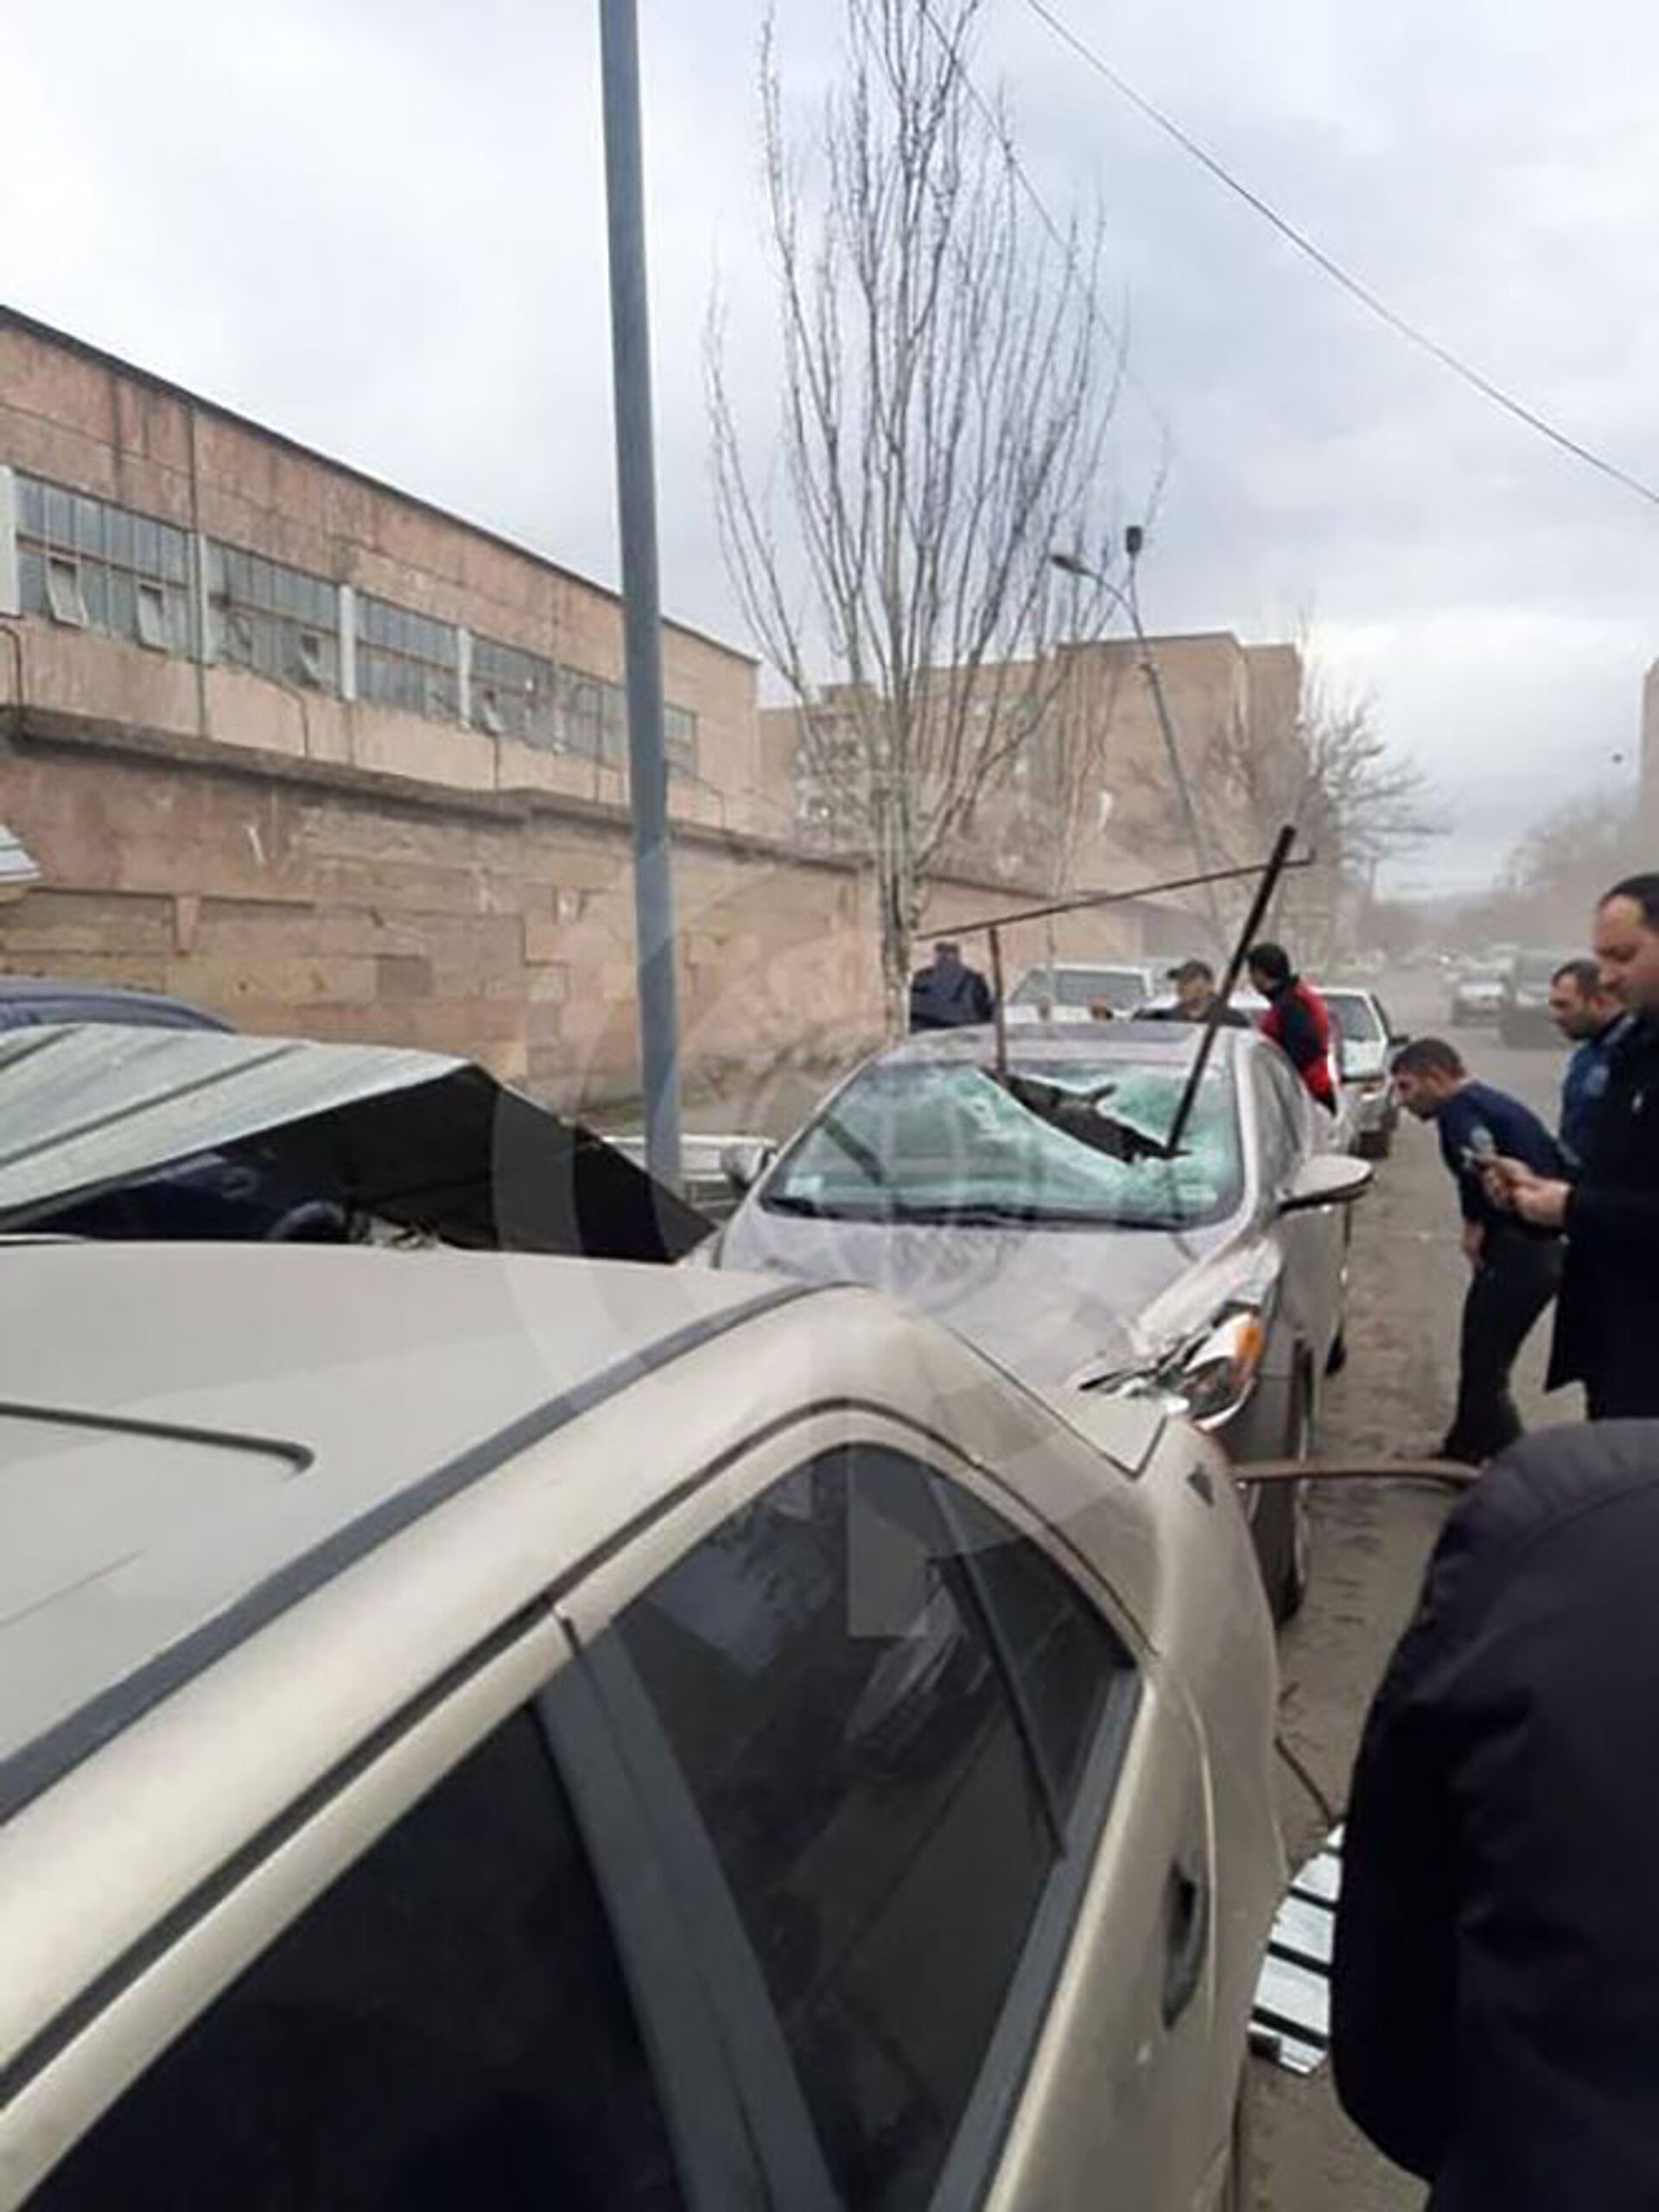 Сильный ветер в Ереване: повреждены крыши зданий и машины - фото - Sputnik Армения, 1920, 17.02.2021